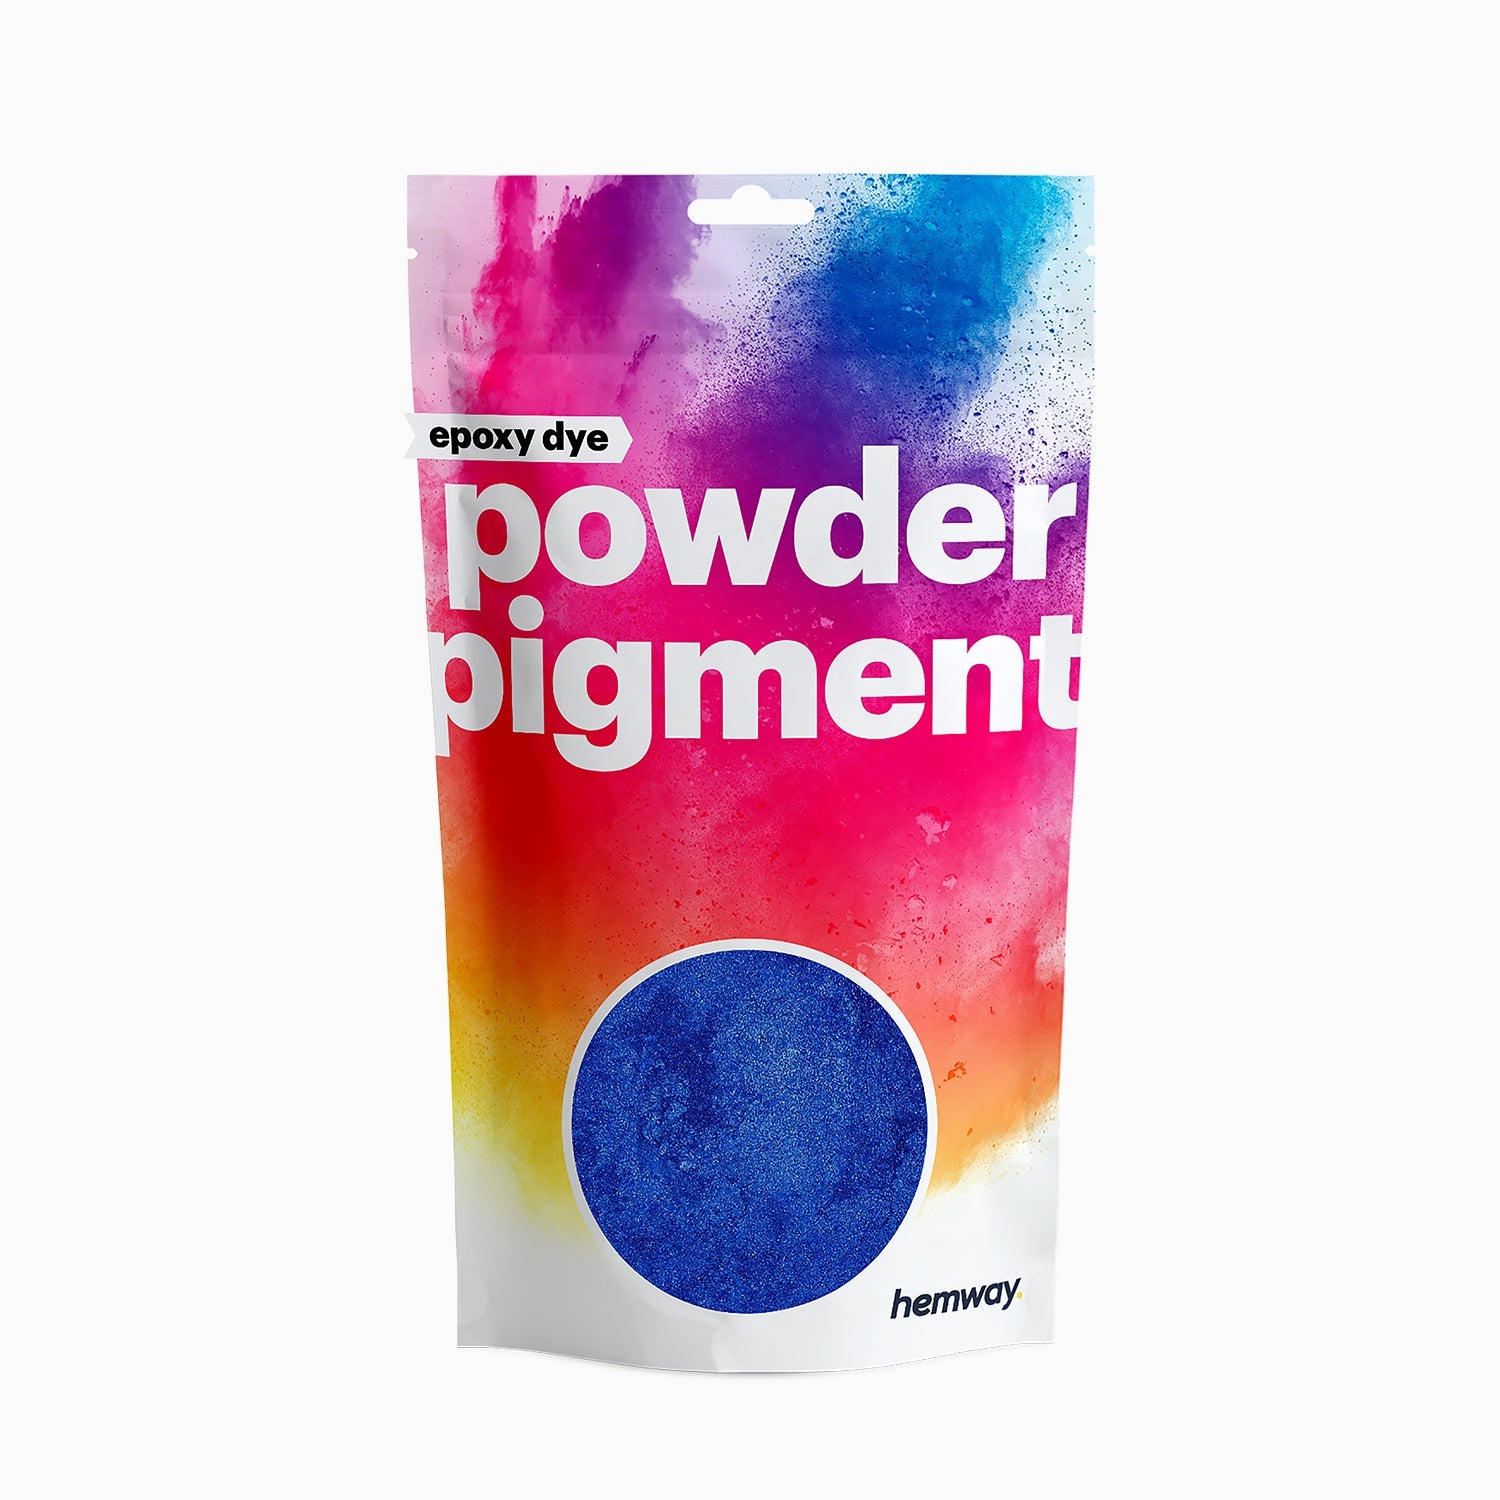 Powder Pigment Epoxy Dye - Metallic Sapphire Blue